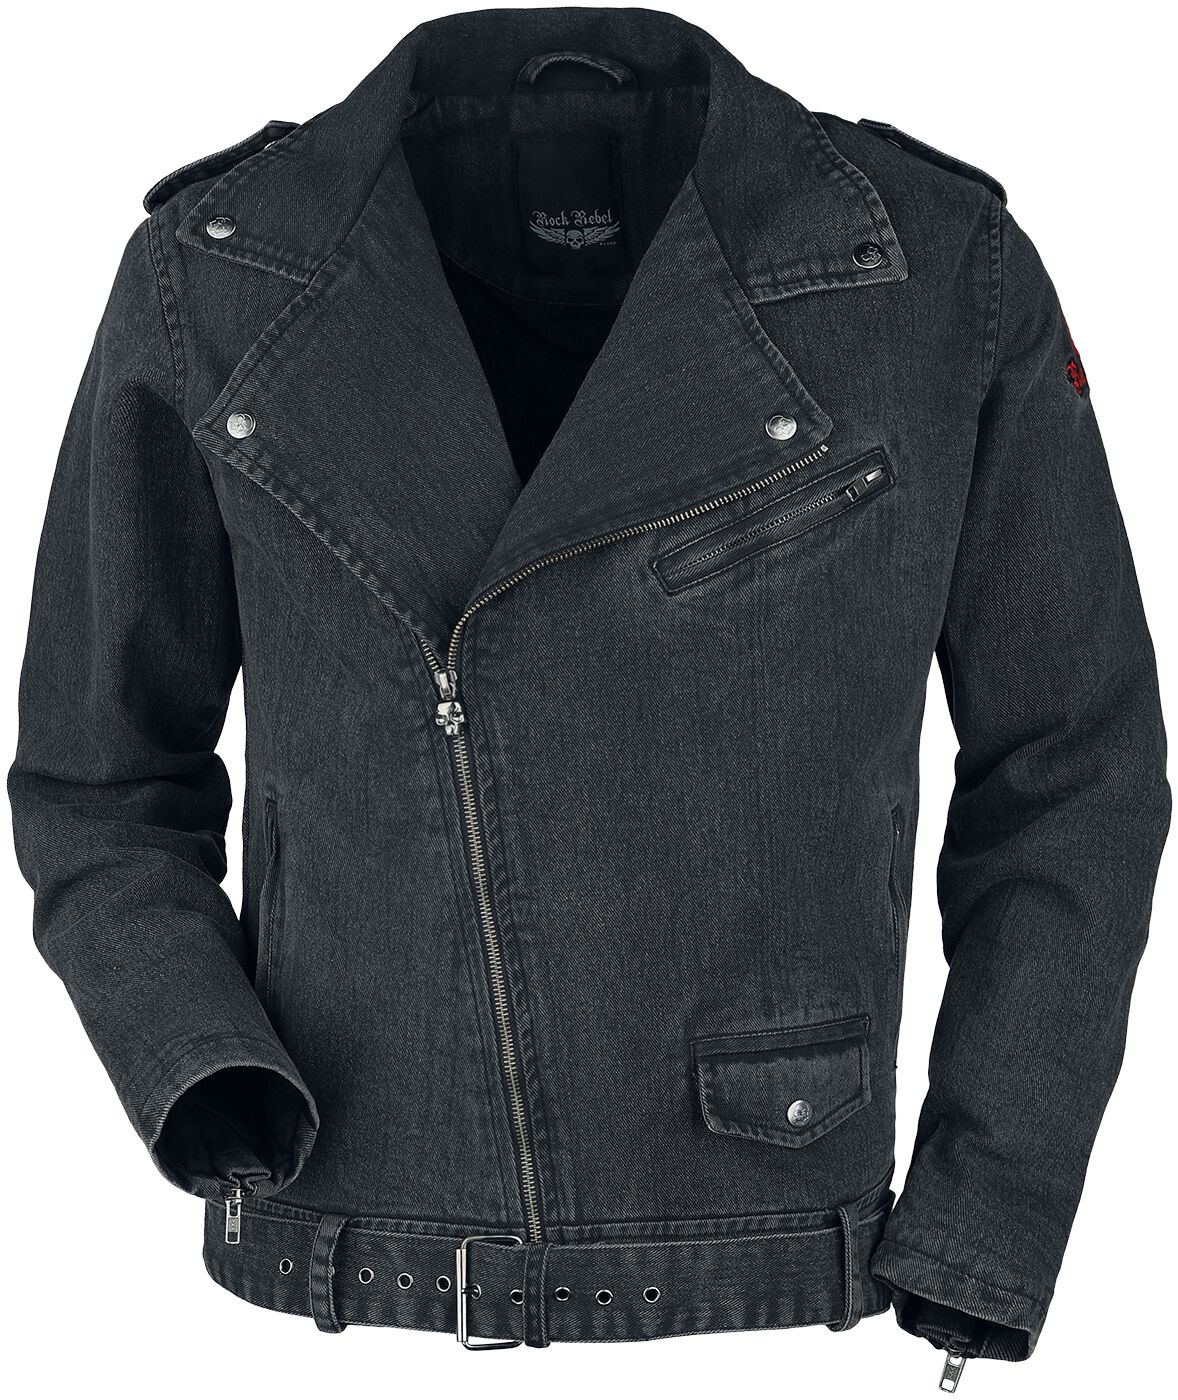 Rock Rebel by EMP - Rock Jeansjacke - Biker Style Jeans Jacket - S bis XXL - für Männer - Größe M - grau